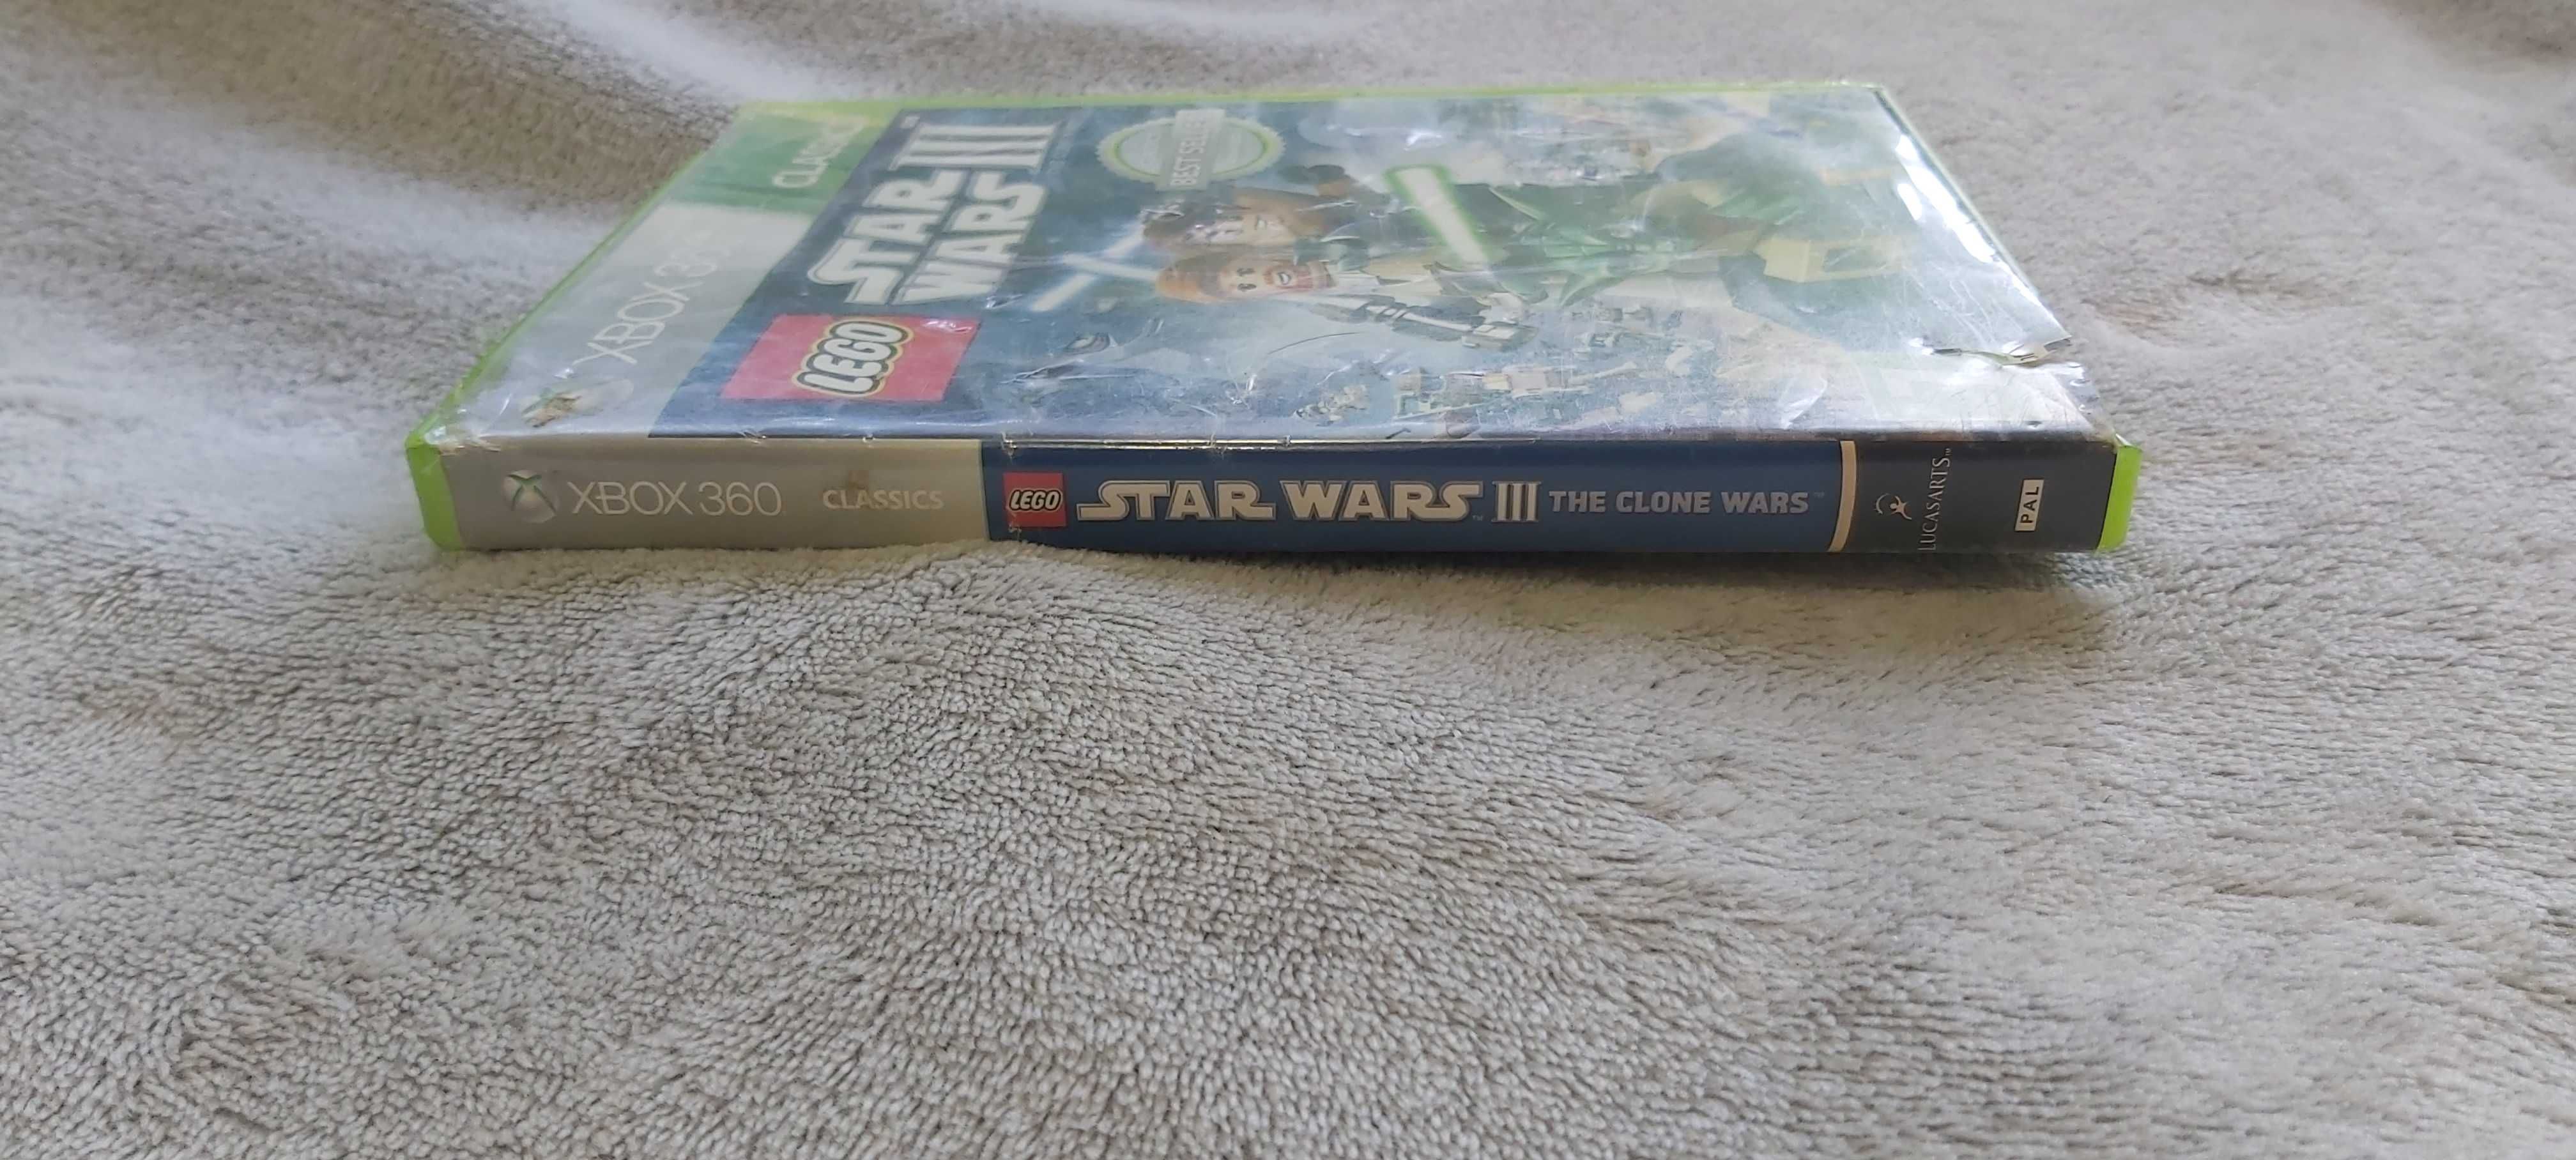 Gra Xbox 360 Star Wars III 3 Wojny Klonów The Clone Wars LEGO